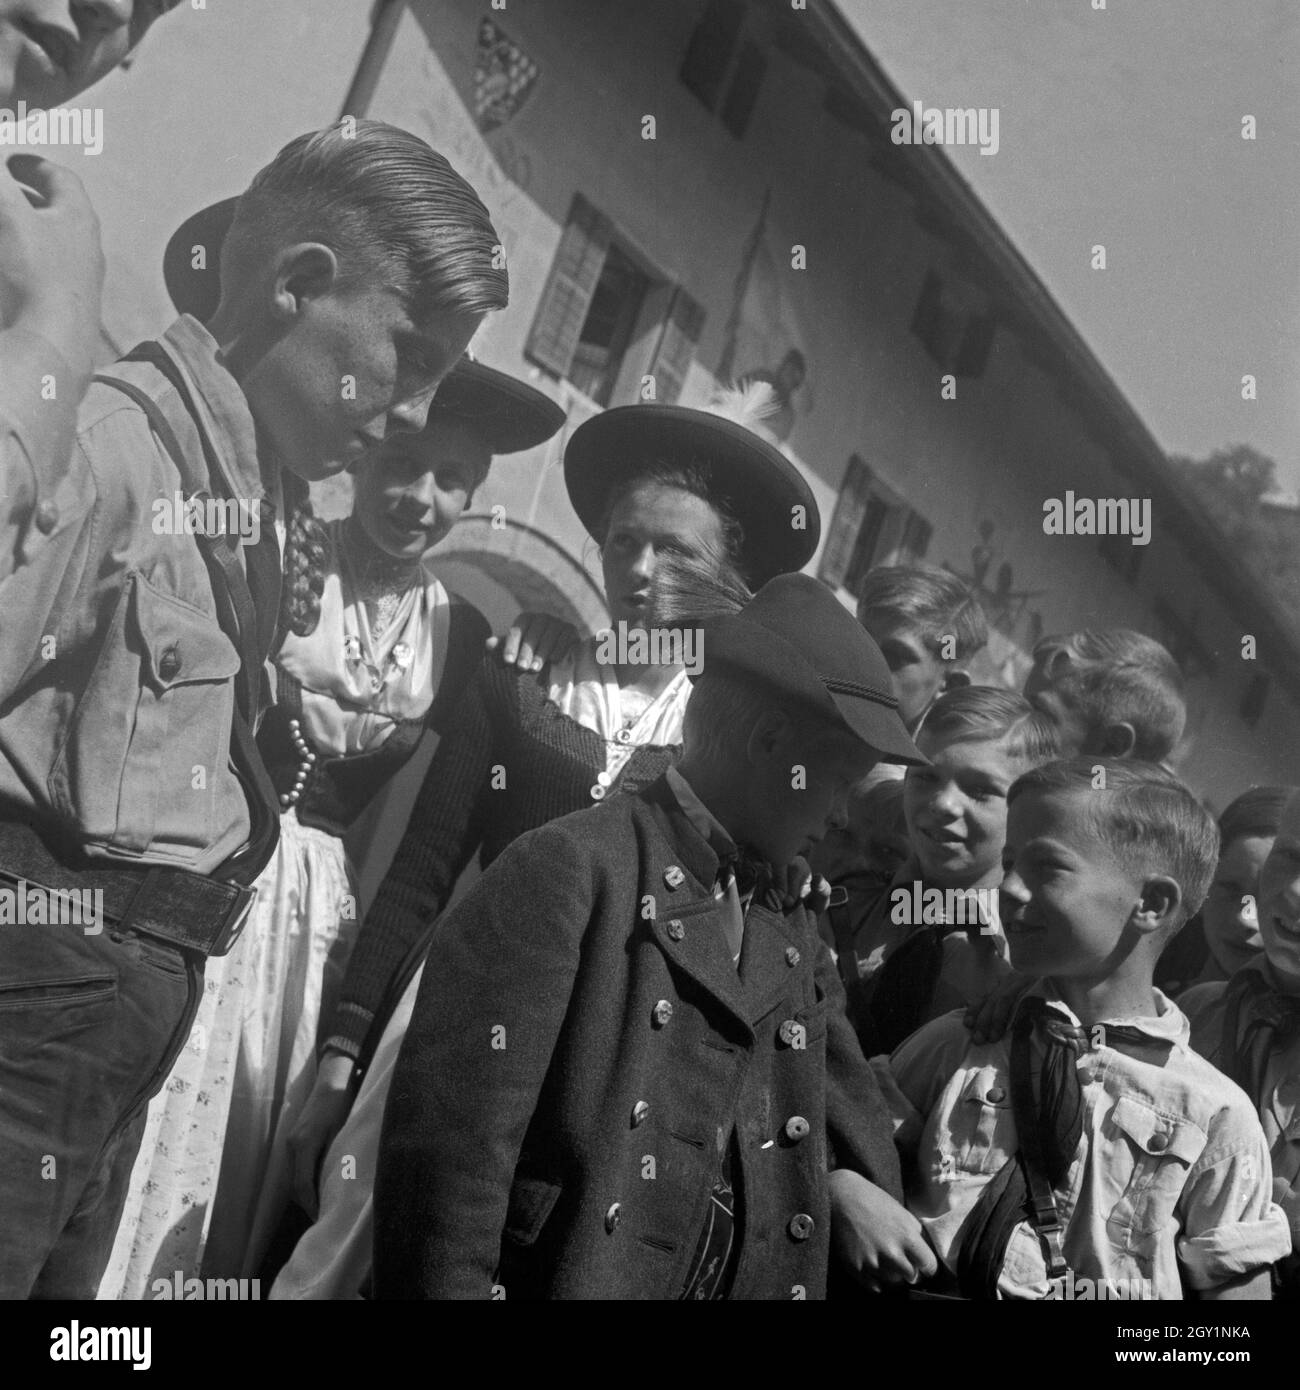 Jungen aus der Hitlerjugend und Kinder aus Berchtesgaden treffen aufeinander, 1930er Jahre. Boys form the Hitler youth and kids from Berchtesgaden meet each other, 1930s. Stock Photo